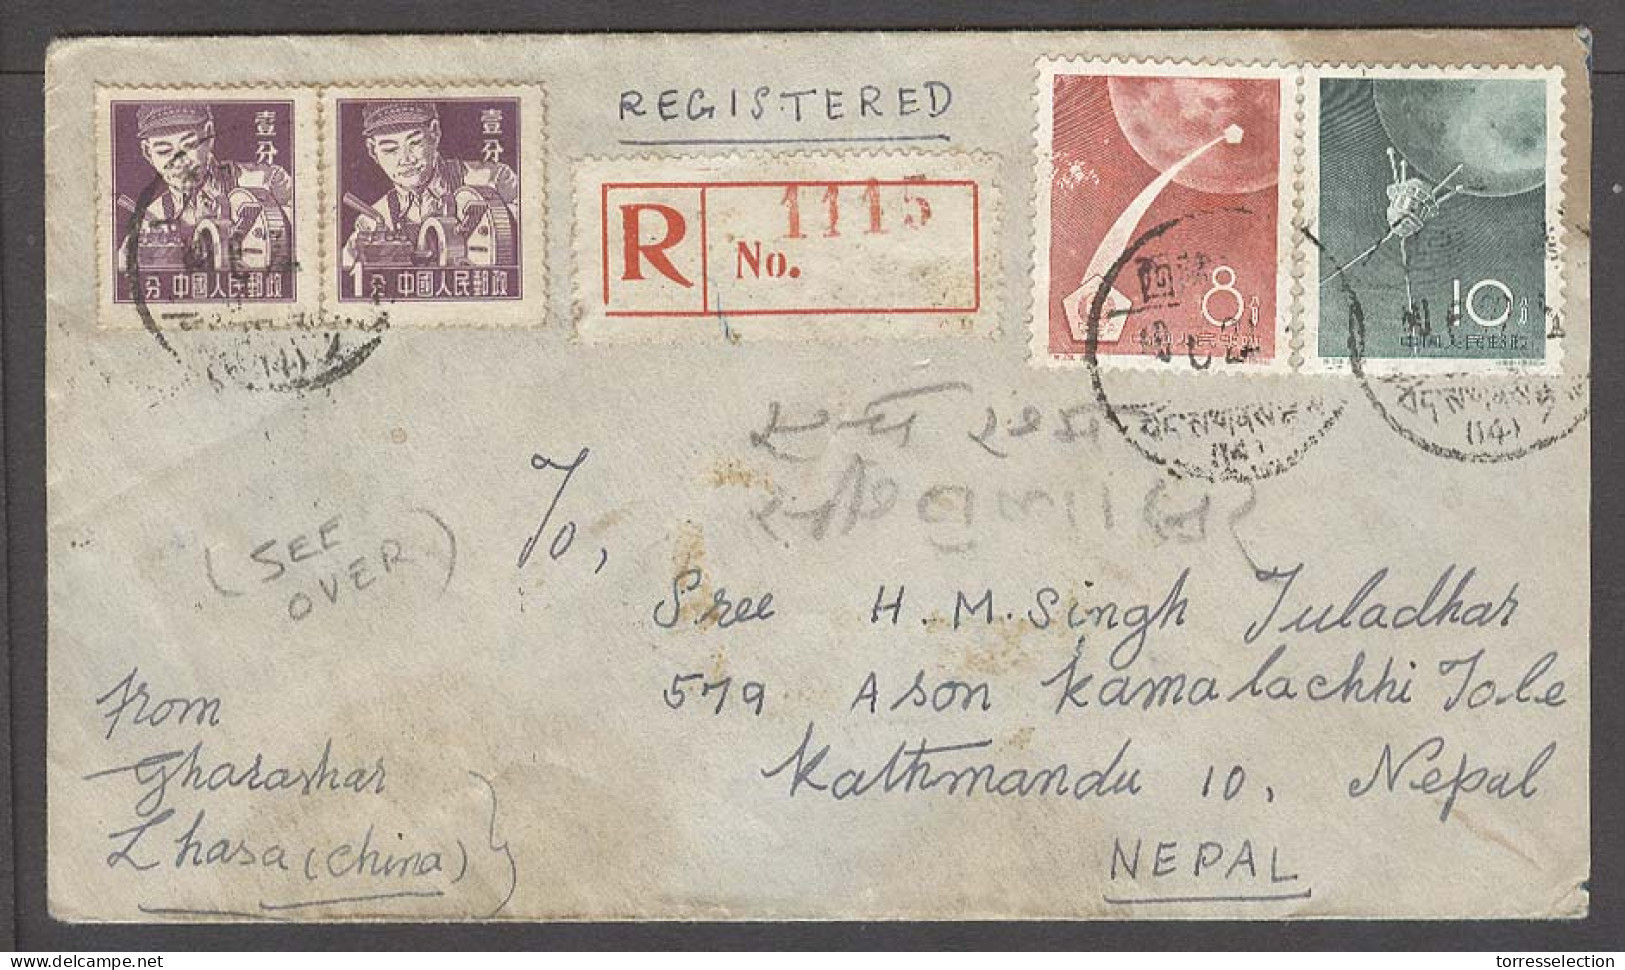 TIBET. 1960. Lhasa - Kathmandu / Nepal. Reg China Stamps Fkd Env Front And Reverse. Fine Usage. - Tibet